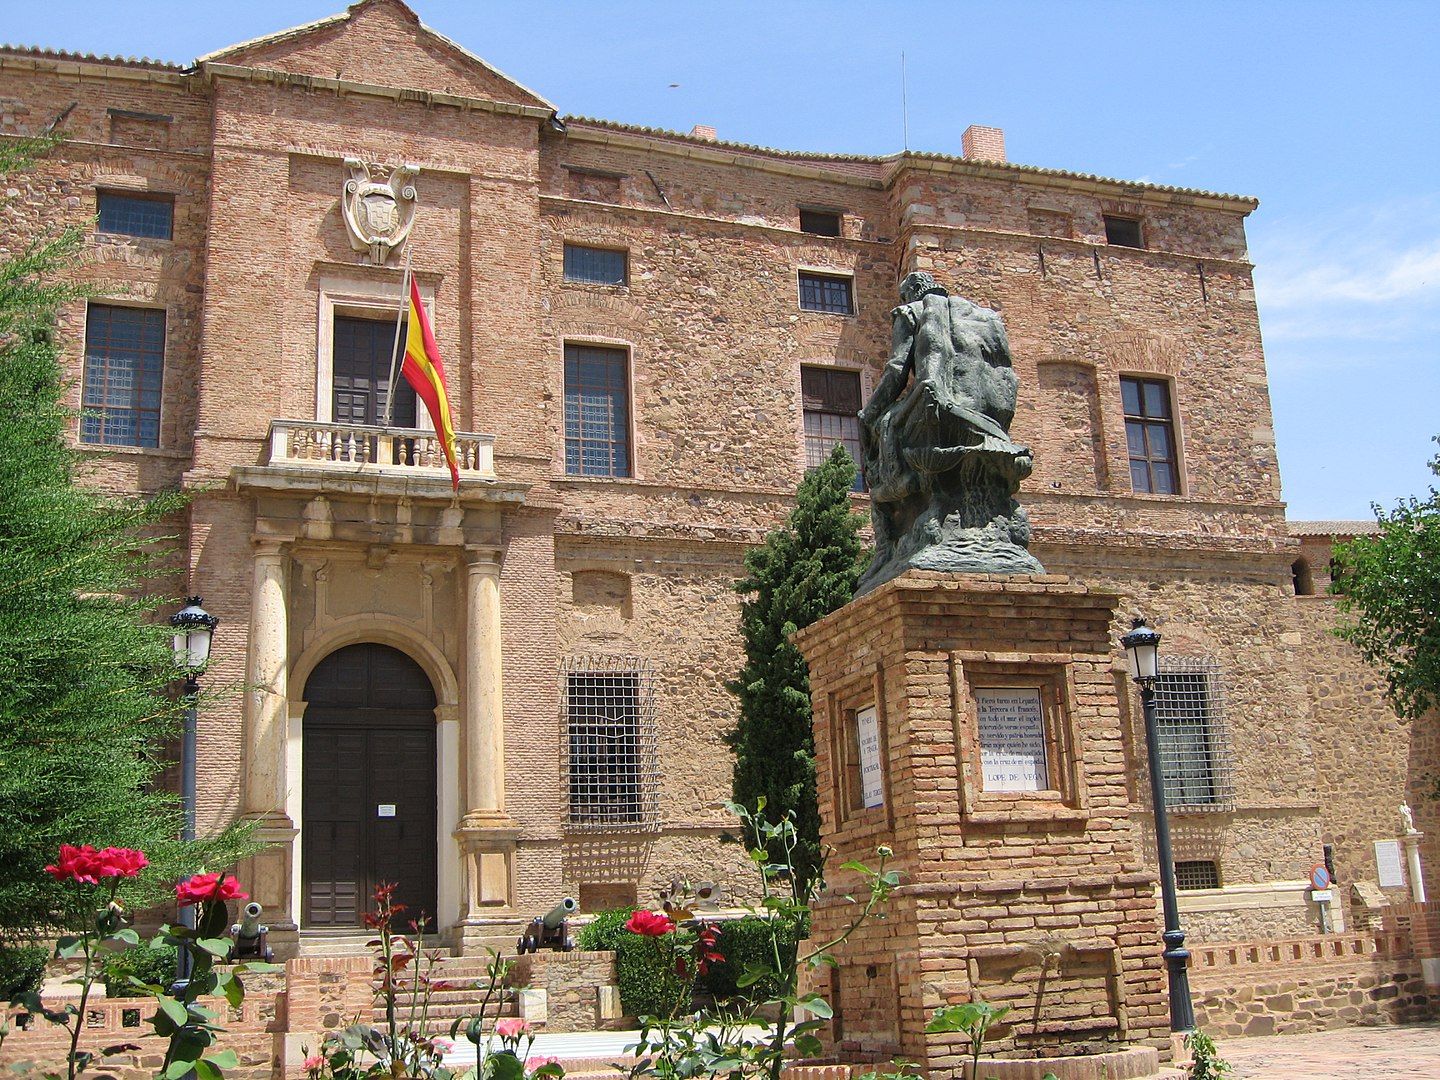 El palacio del almirante don Álvaro de Bazán, en Viso del marqués, tiene un interior que poco tiene que envidiar a los edificios renacentistas italianos